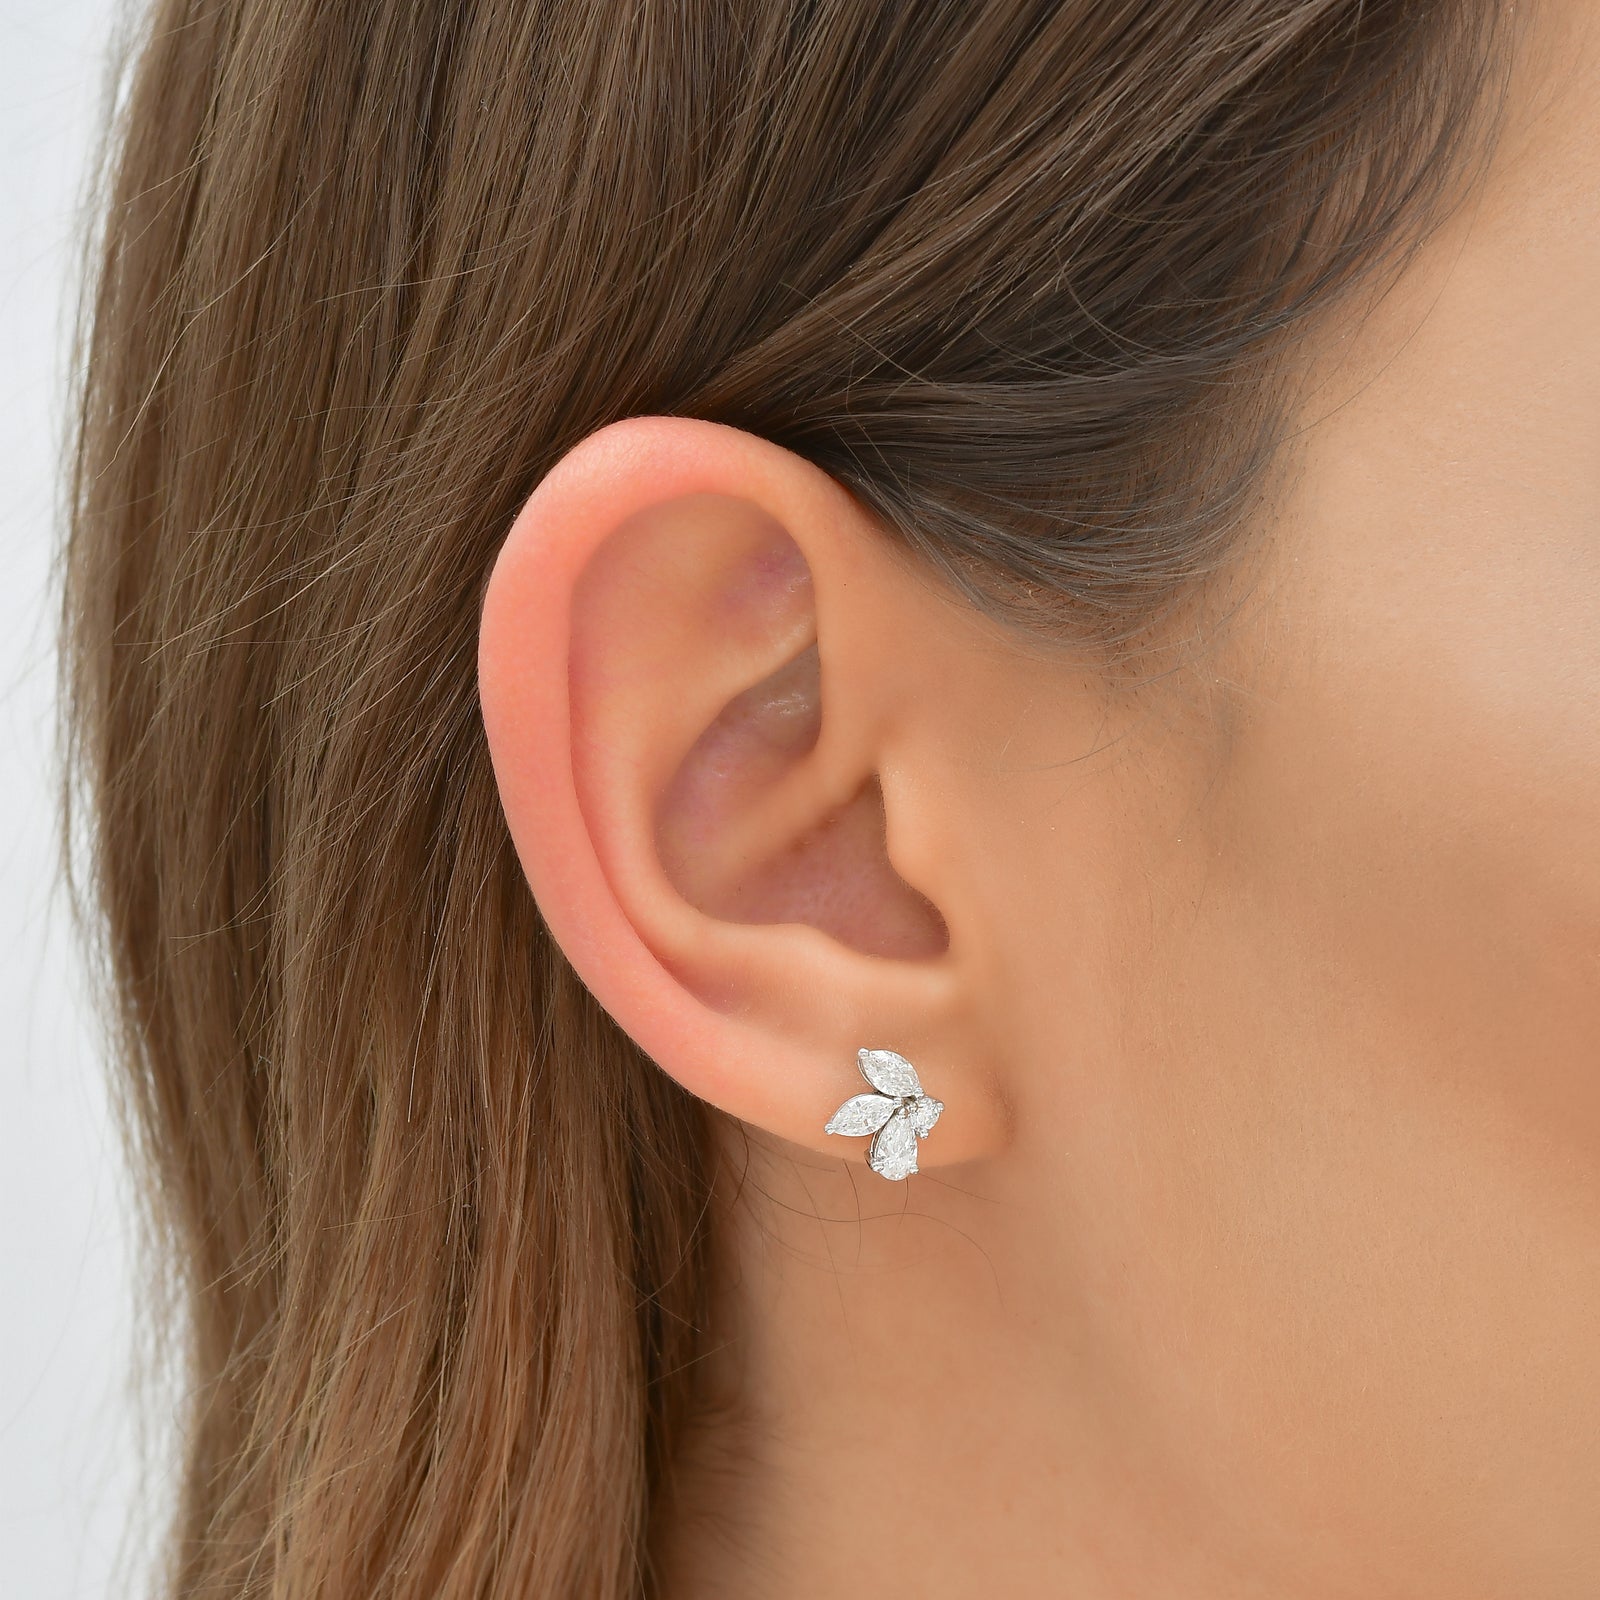 The Aurora Petite Earrings